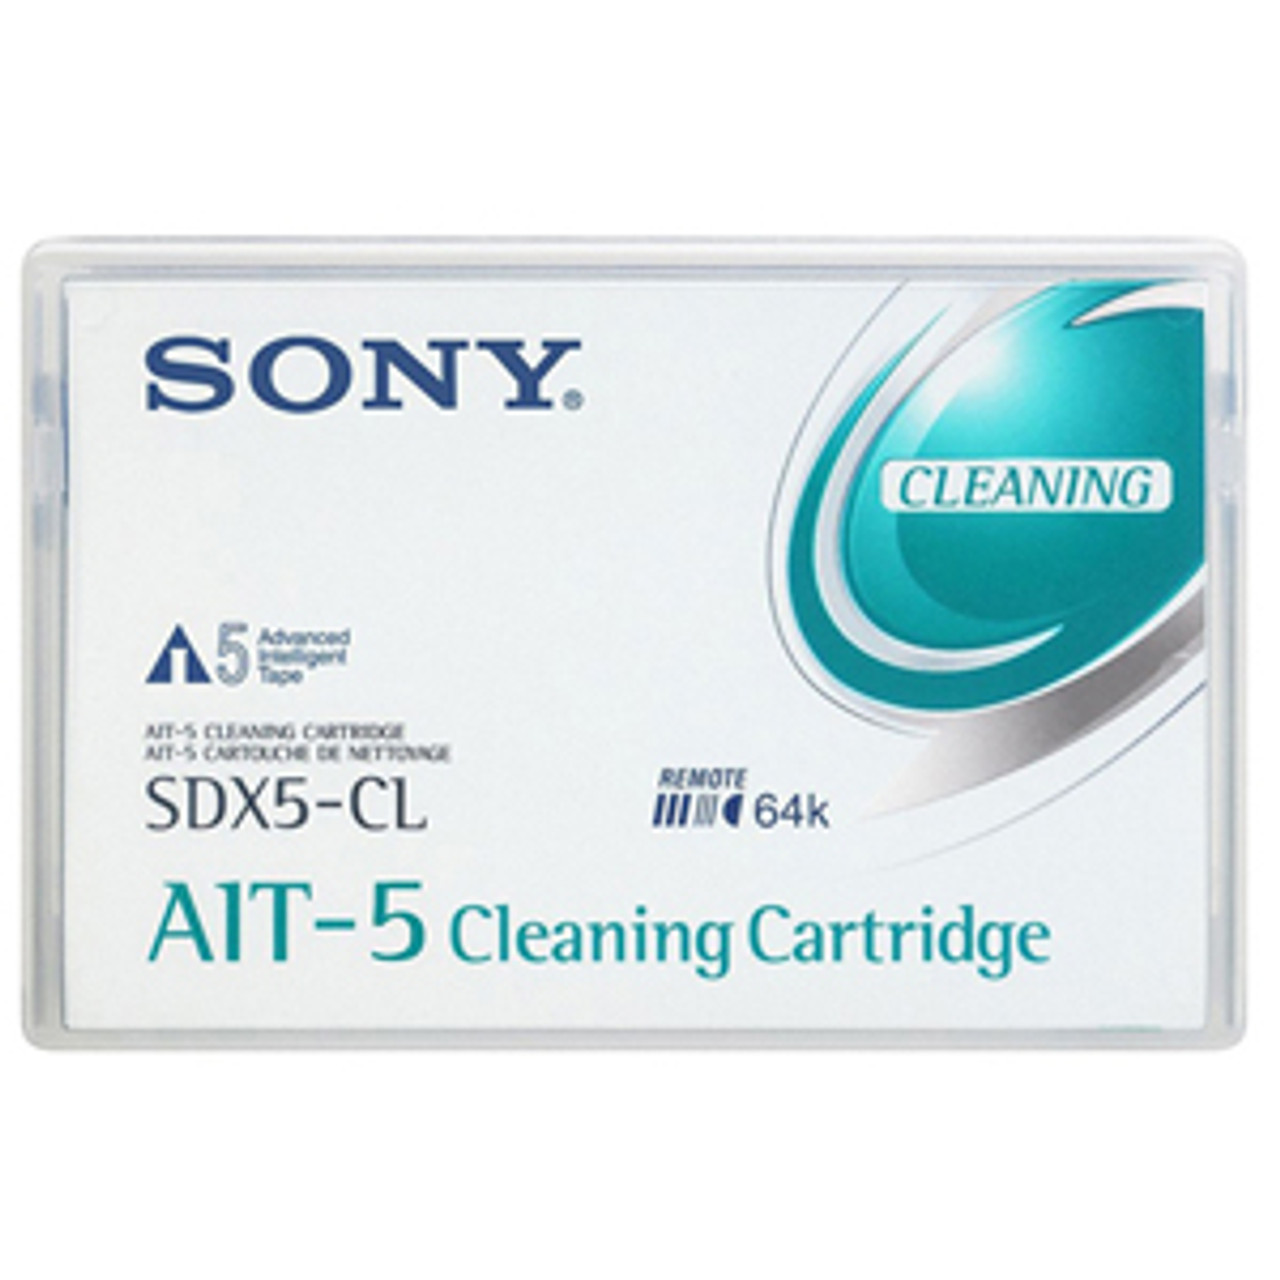 SDX5CL - Sony AIT-5 Cleaning Cartridge - AIT AIT-5